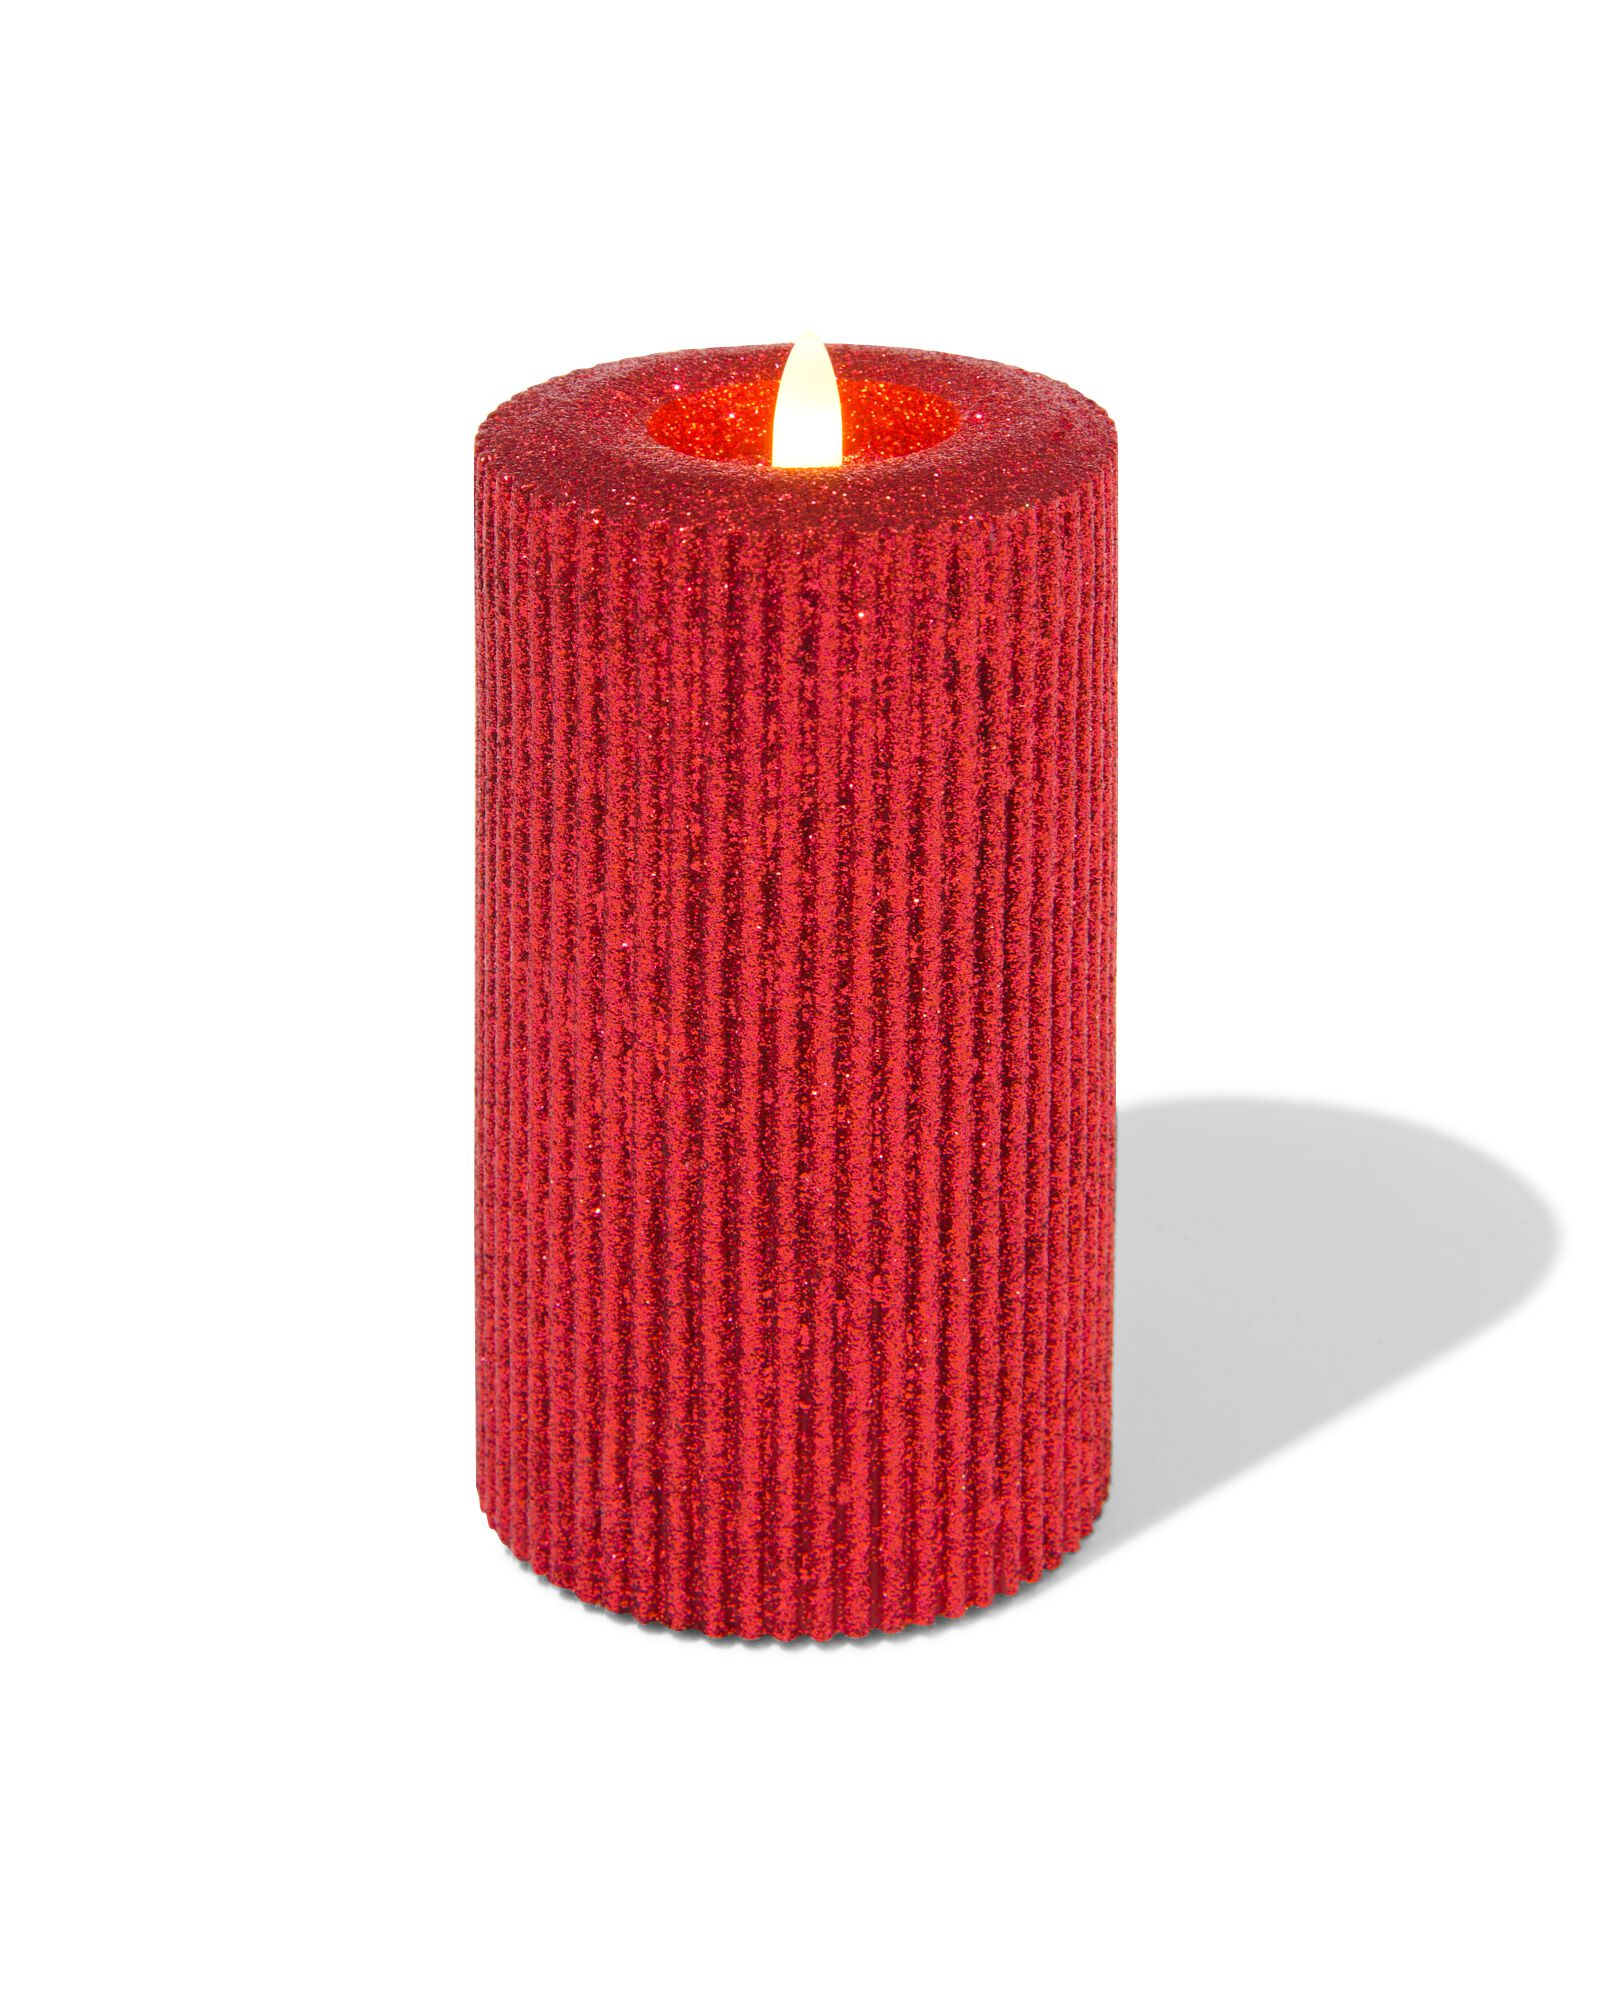 bougie LED rouge paillette blanc chaud Ø7.5x15cm - HEMA